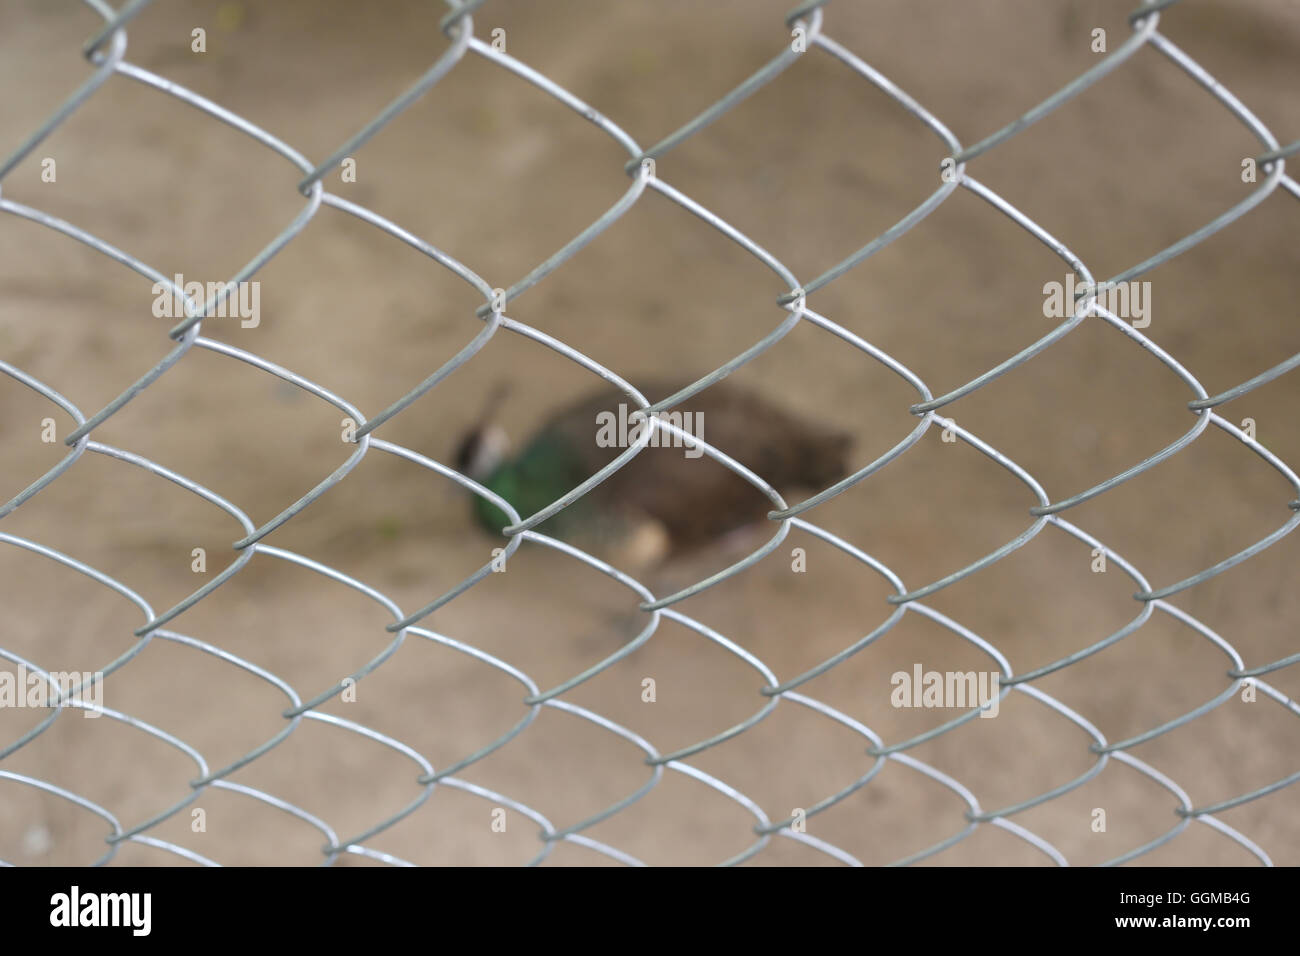 Peacock de conservar las aves se encuentran atrapados dentro de una jaula de concepto de la captura de animales silvestres. Foto de stock